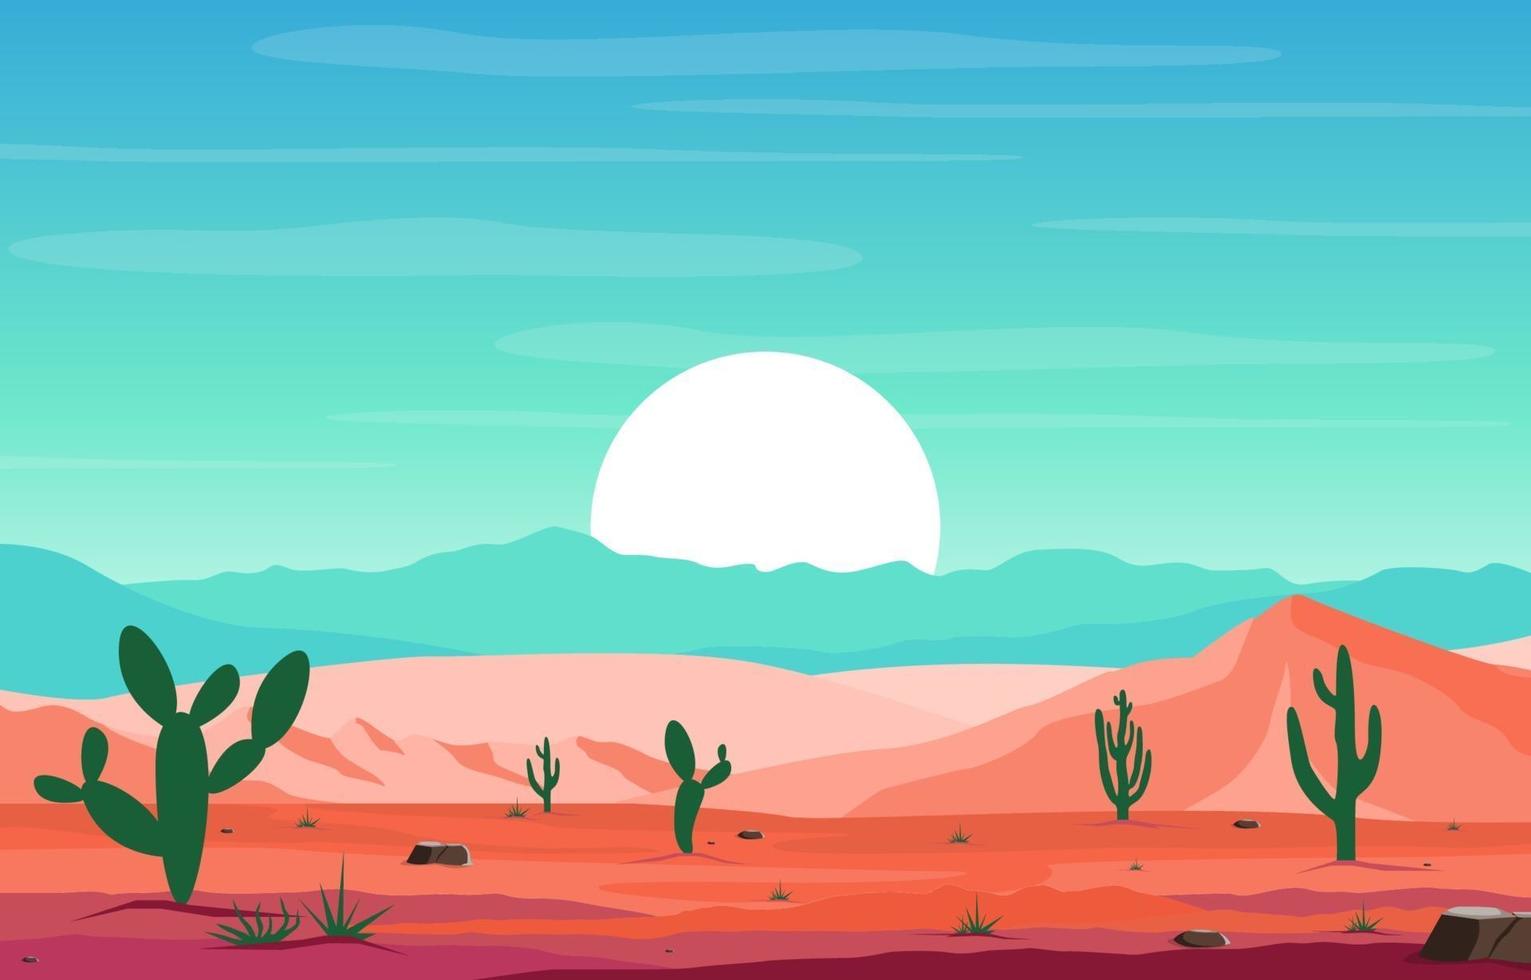 journée dans la vaste montagne du désert rock hill avec cactus horizon paysage illustration vecteur